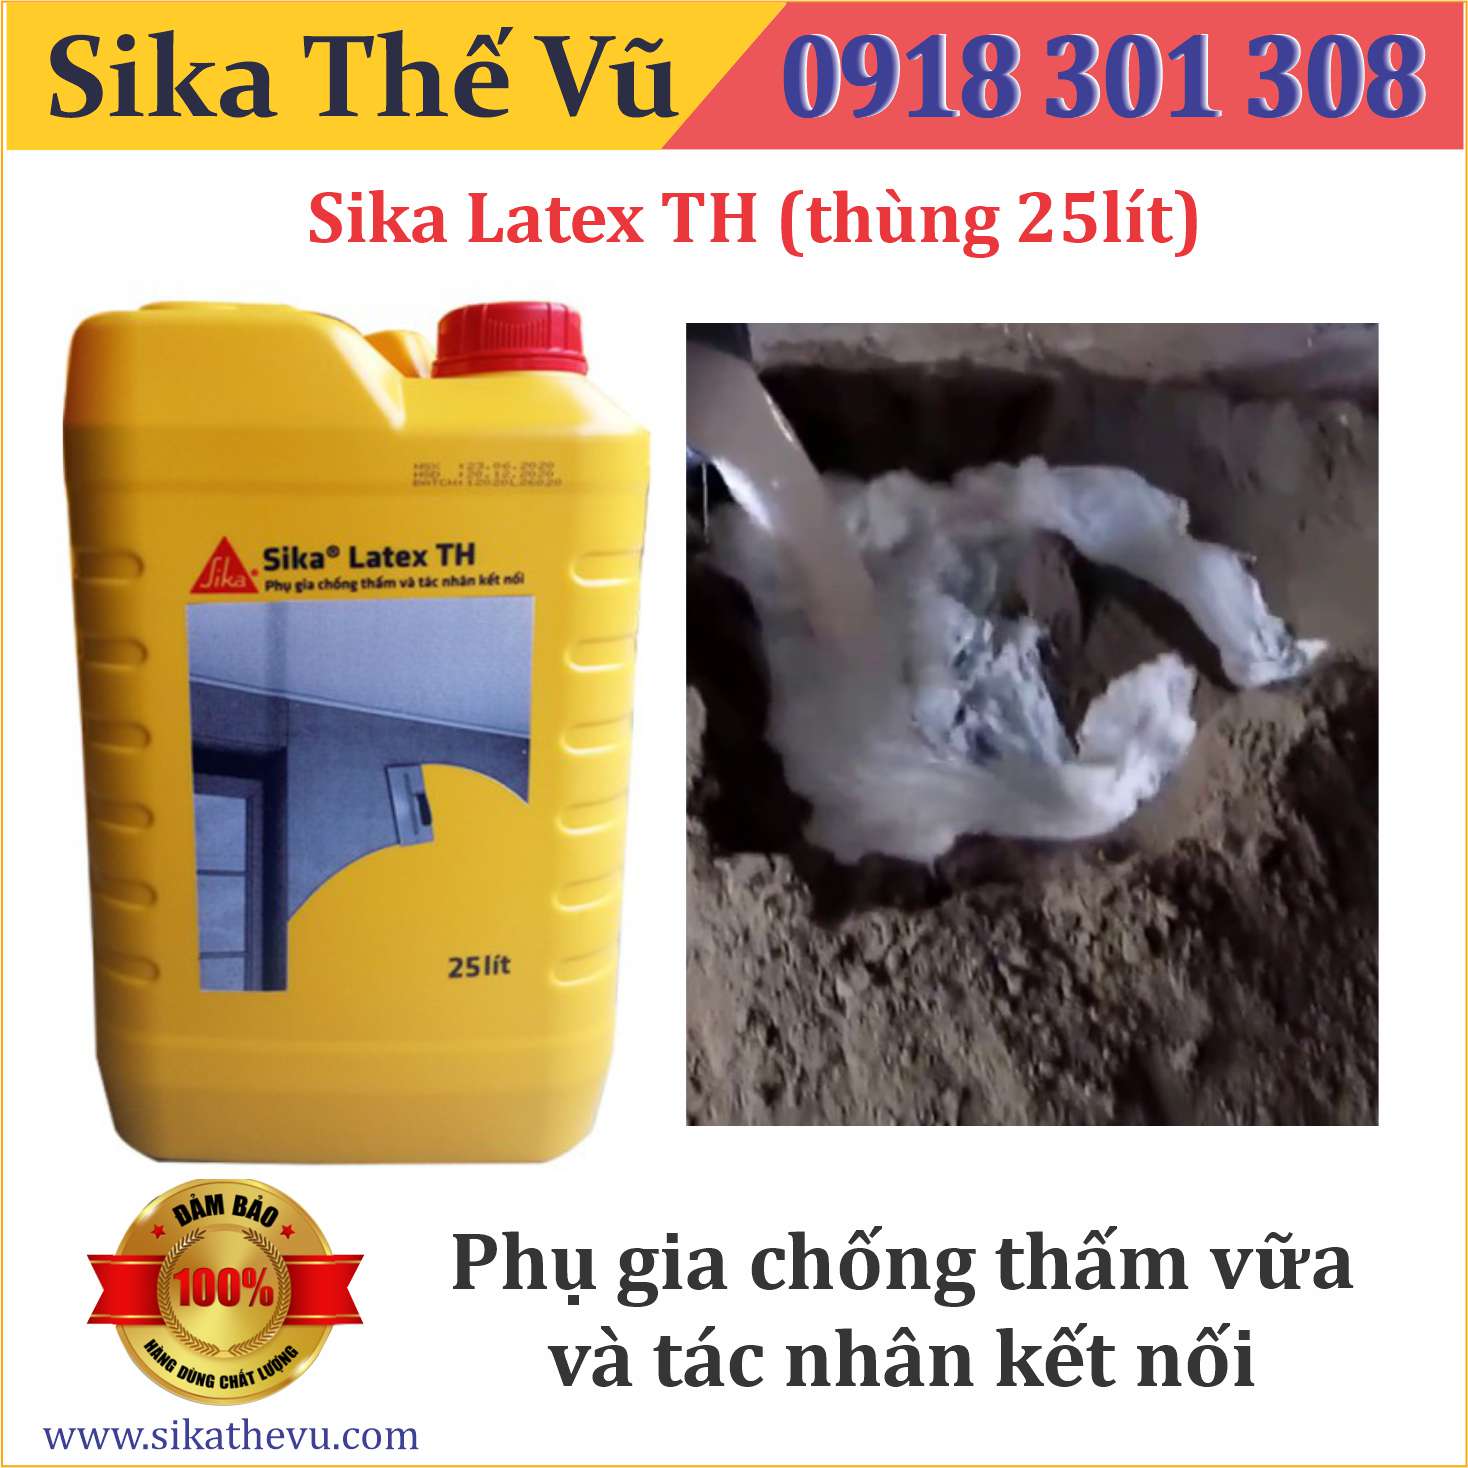 Phụ gia chống thấm vữa và tác nhân kết nối - Sikalatex TH (thùng 25lít)